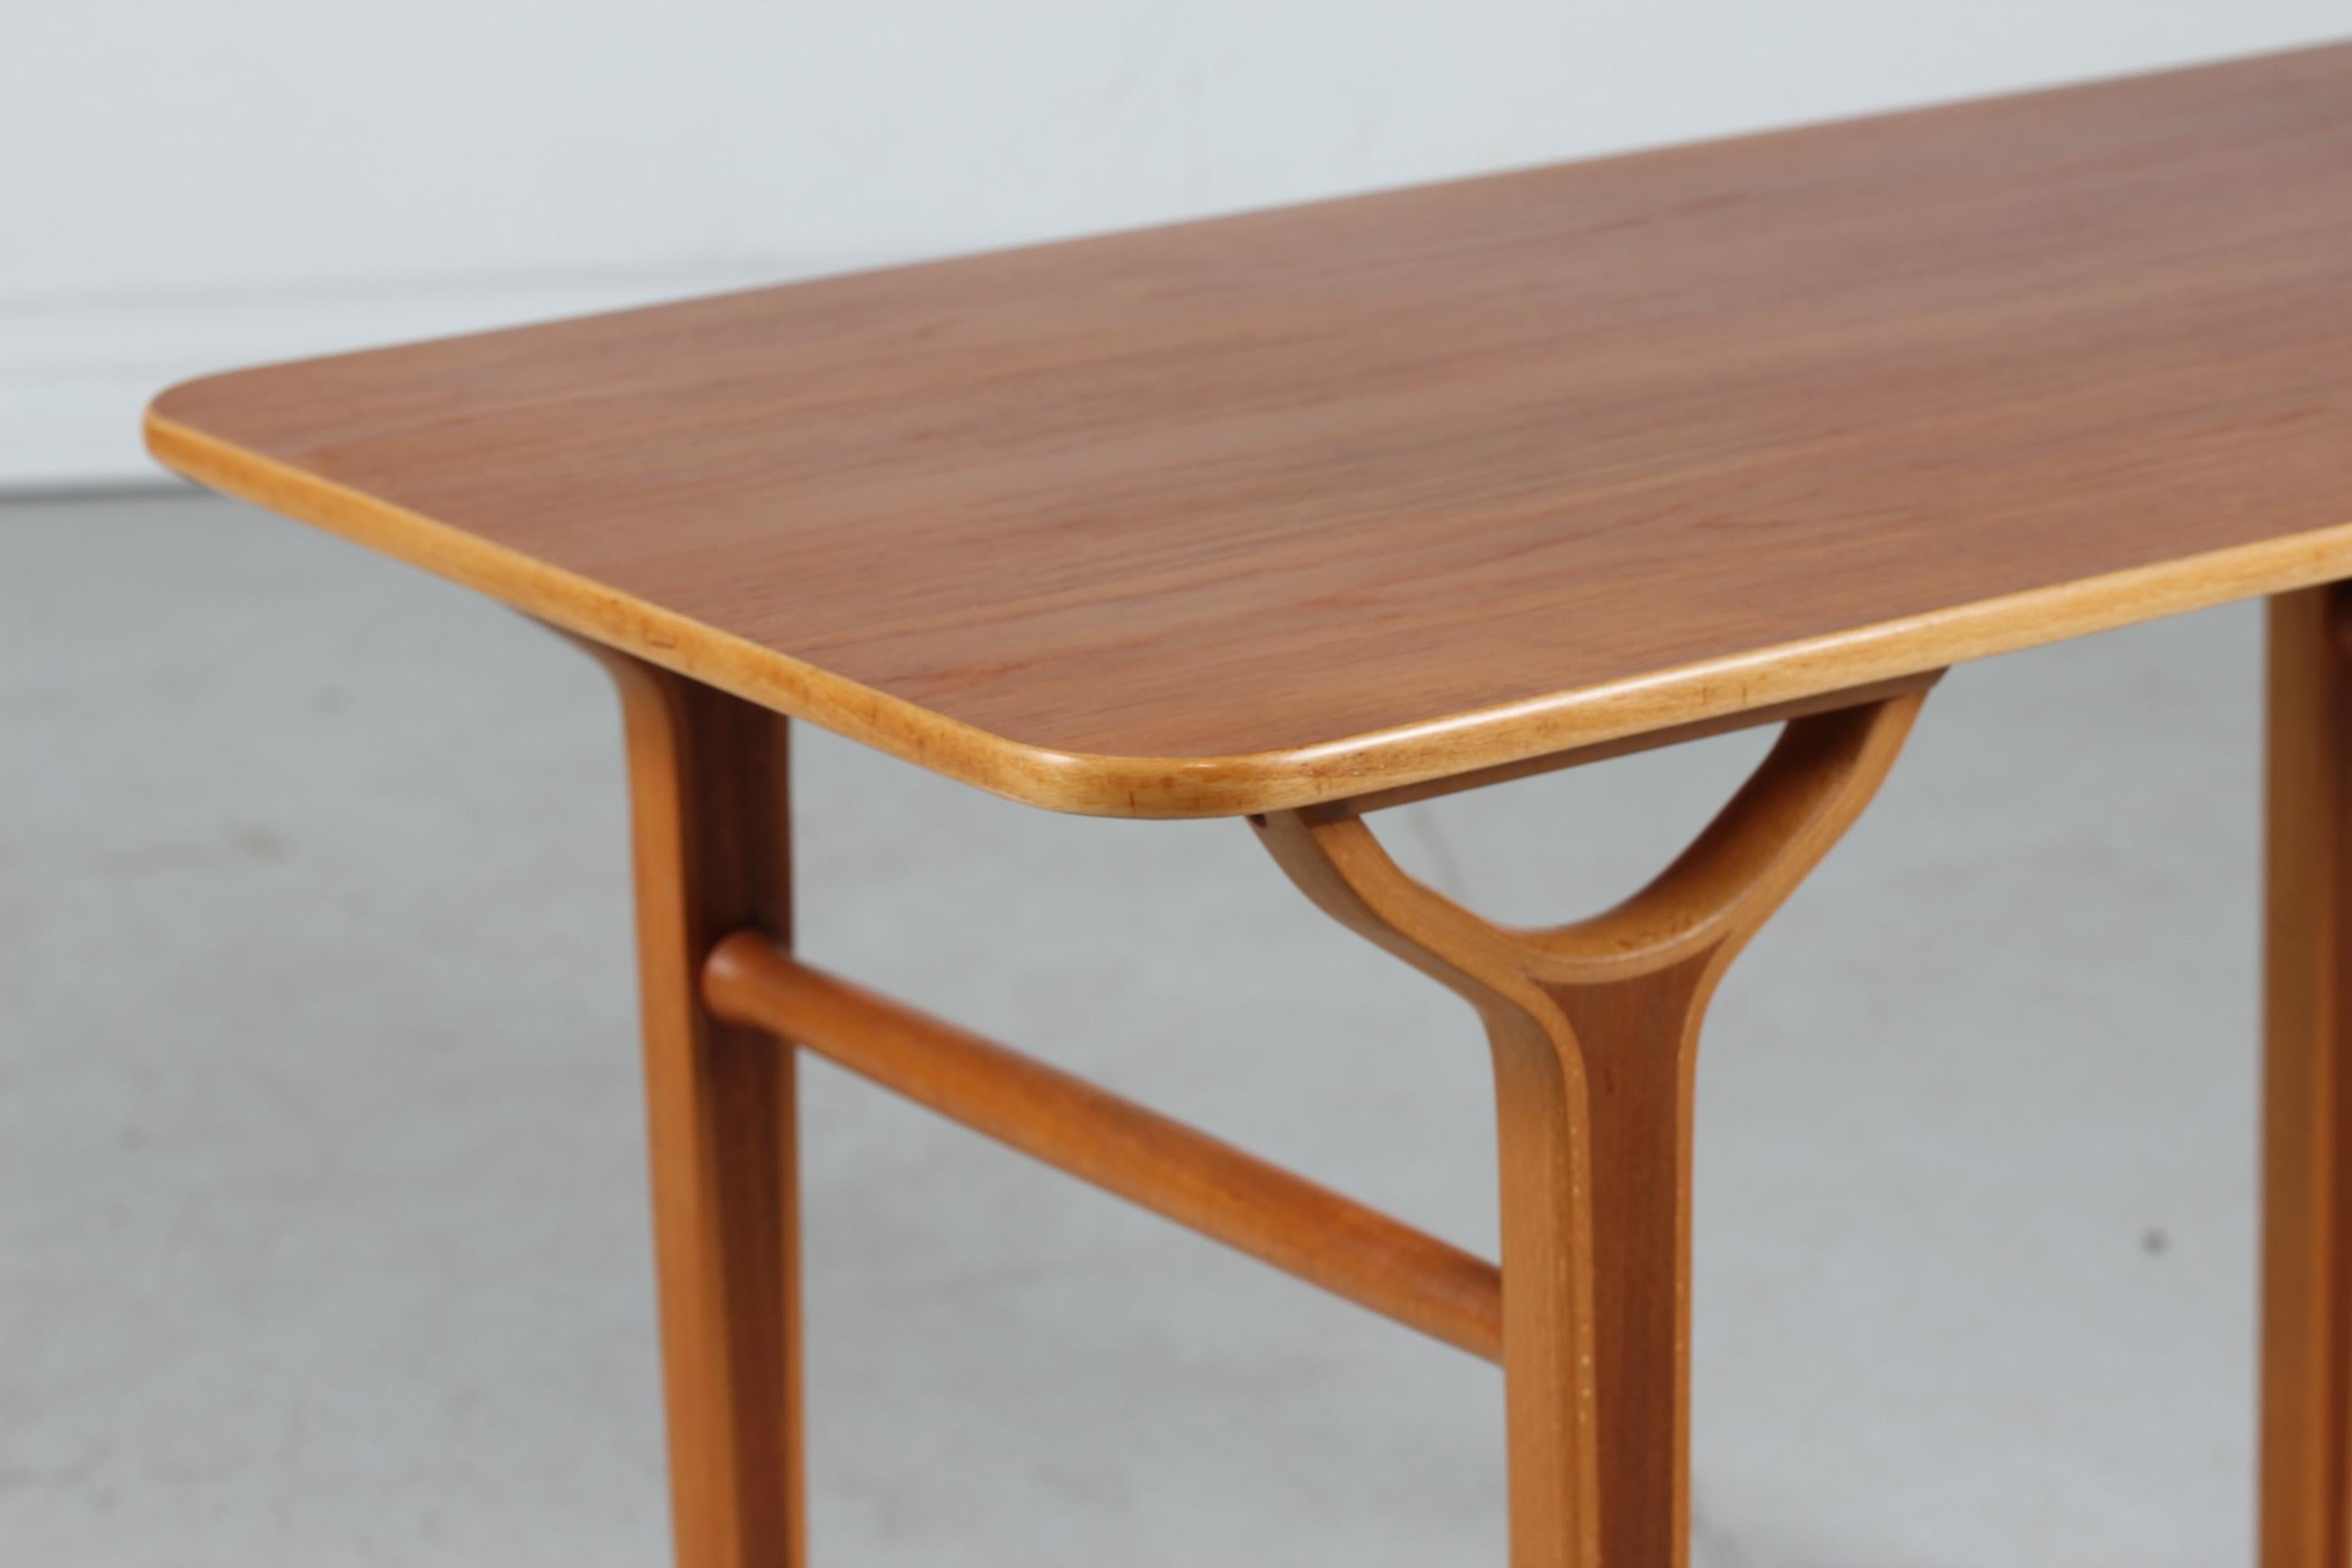 Table basse AX vintage des architectes danois Peter Hvidt et Orla Mlgaard.

La table est fabriquée dans les années 1950 en teck avec du bois de hêtre incrusté et est en très bon état vintage sans dommages.

Fabriqué par Fritz Hansen A/S.

